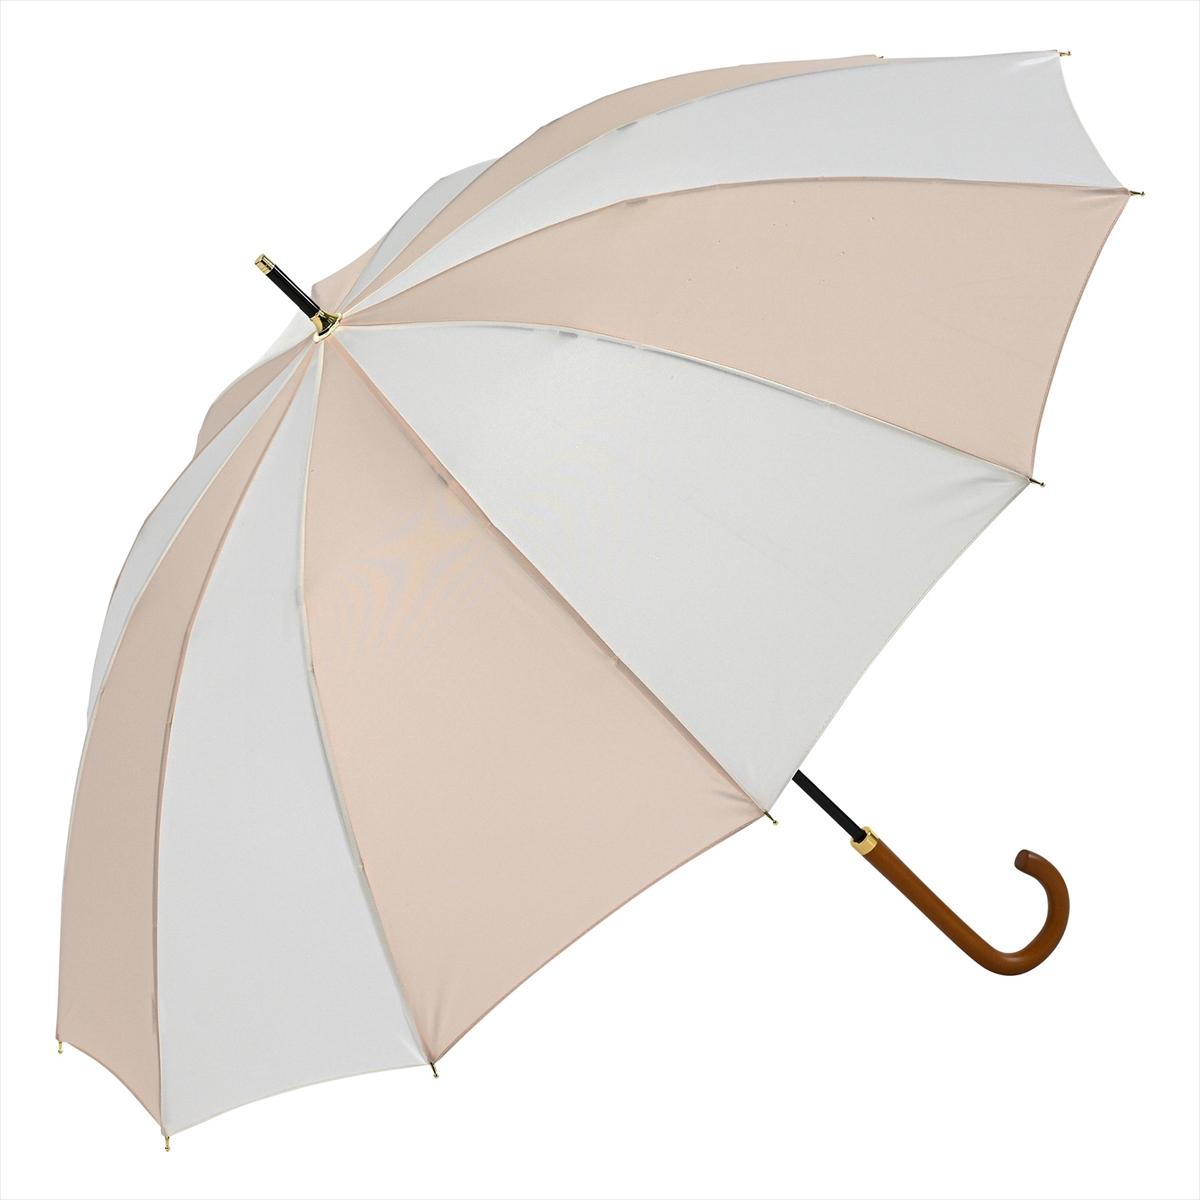 公式 傘 雨傘 レディース 長傘 晴雨兼用 12本骨 耐風 手開き 軽量 ニフティカラーズ